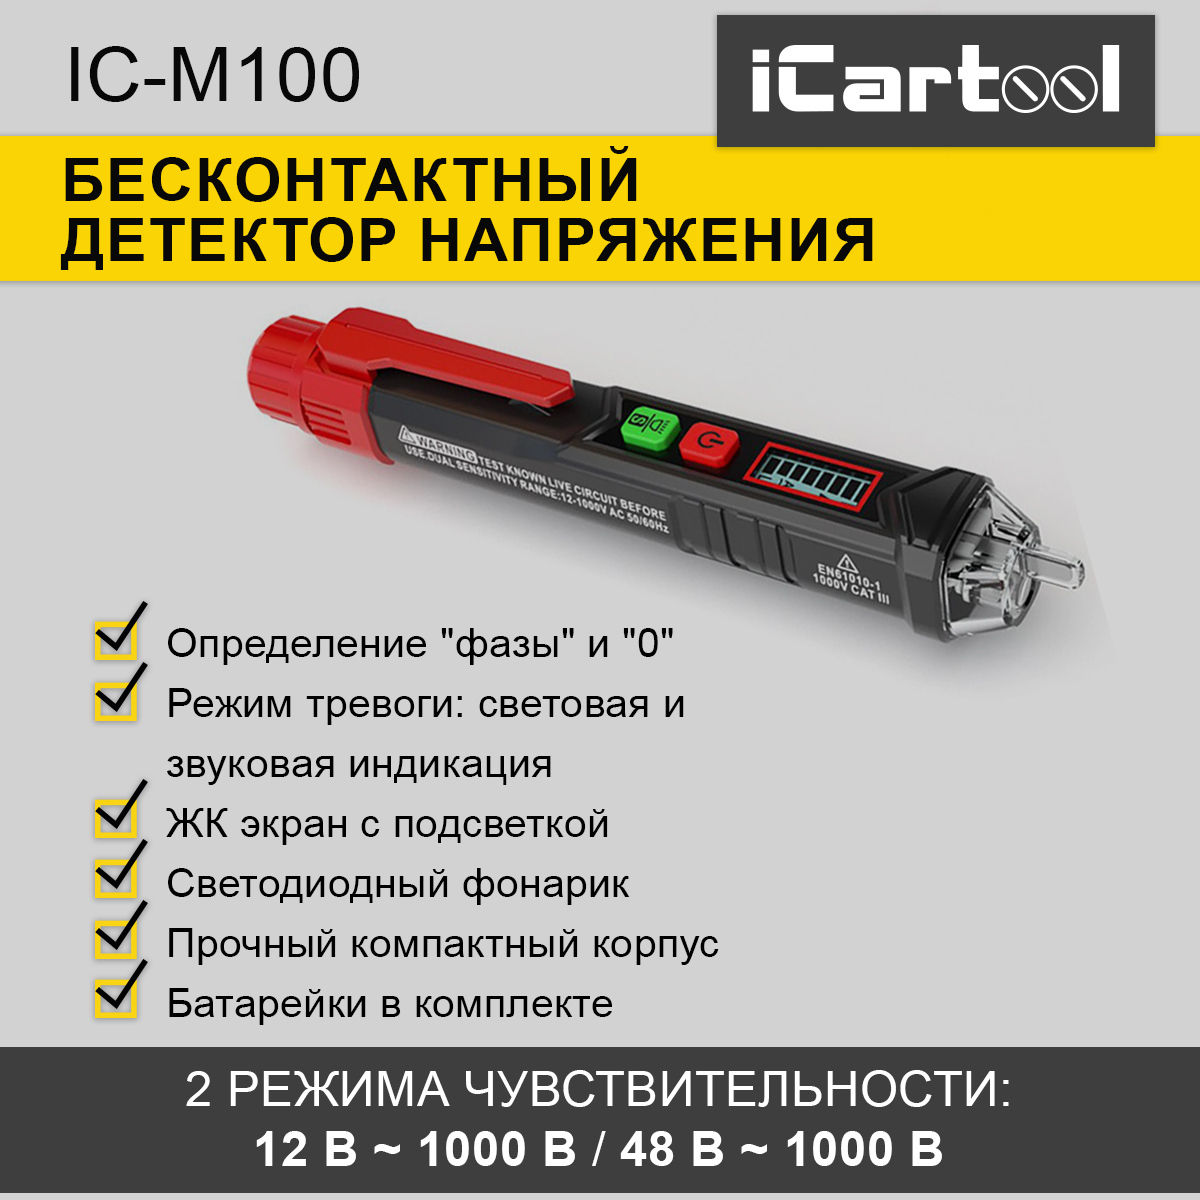 Бесконтактный детектор напряжения iCartool IC-M100 бесконтактный детектор напряжения icartool